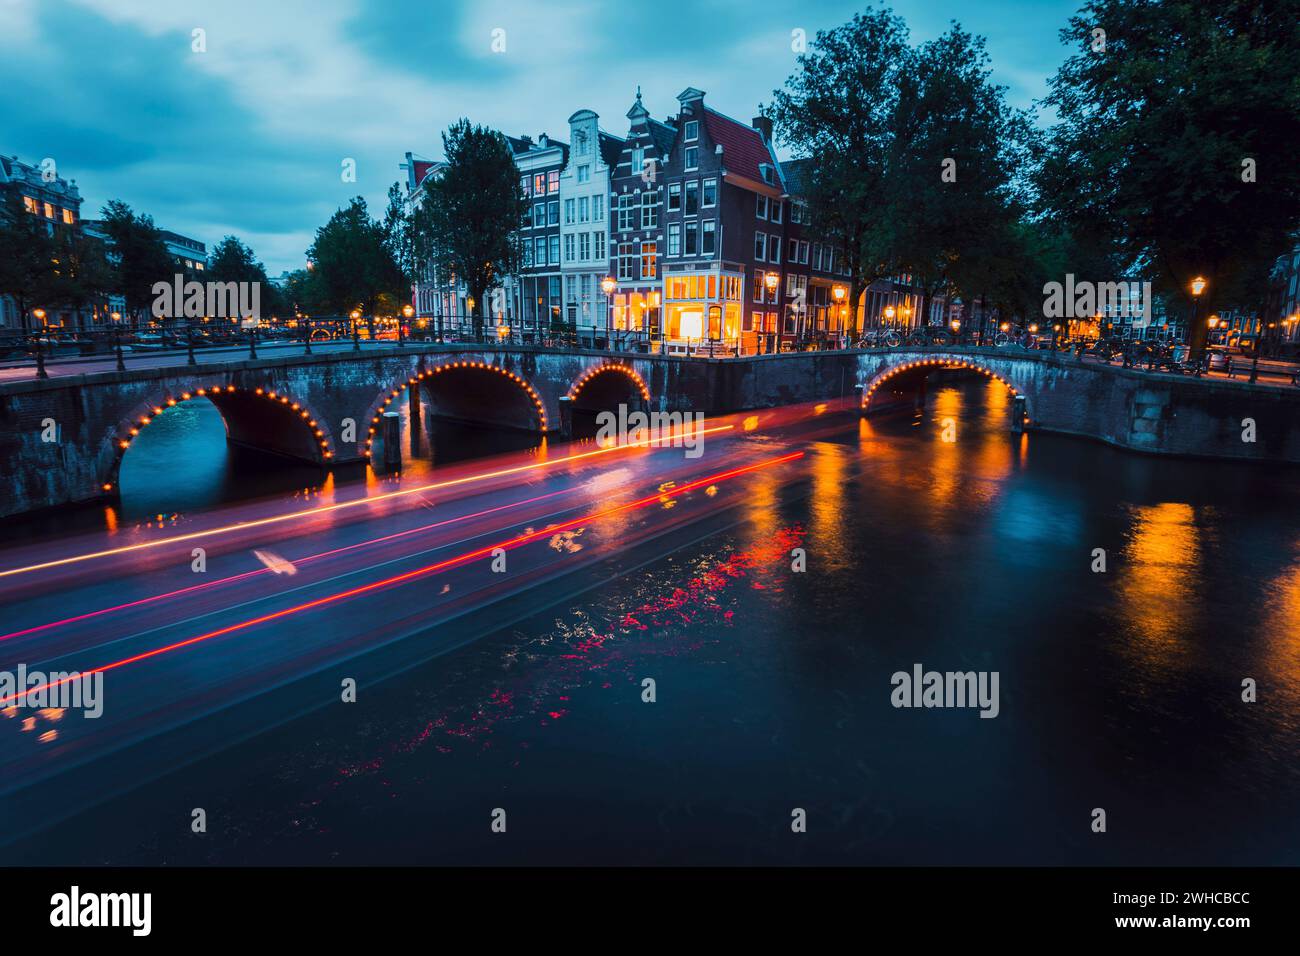 Fantastische Lichtwege und Reflexionen auf dem Wasser an den Kanälen Leidsegracht und Keizersgracht in Amsterdam am Abend. Langbelichtungsaufnahme. Romantisches Städtetrip-Konzept. Stockfoto